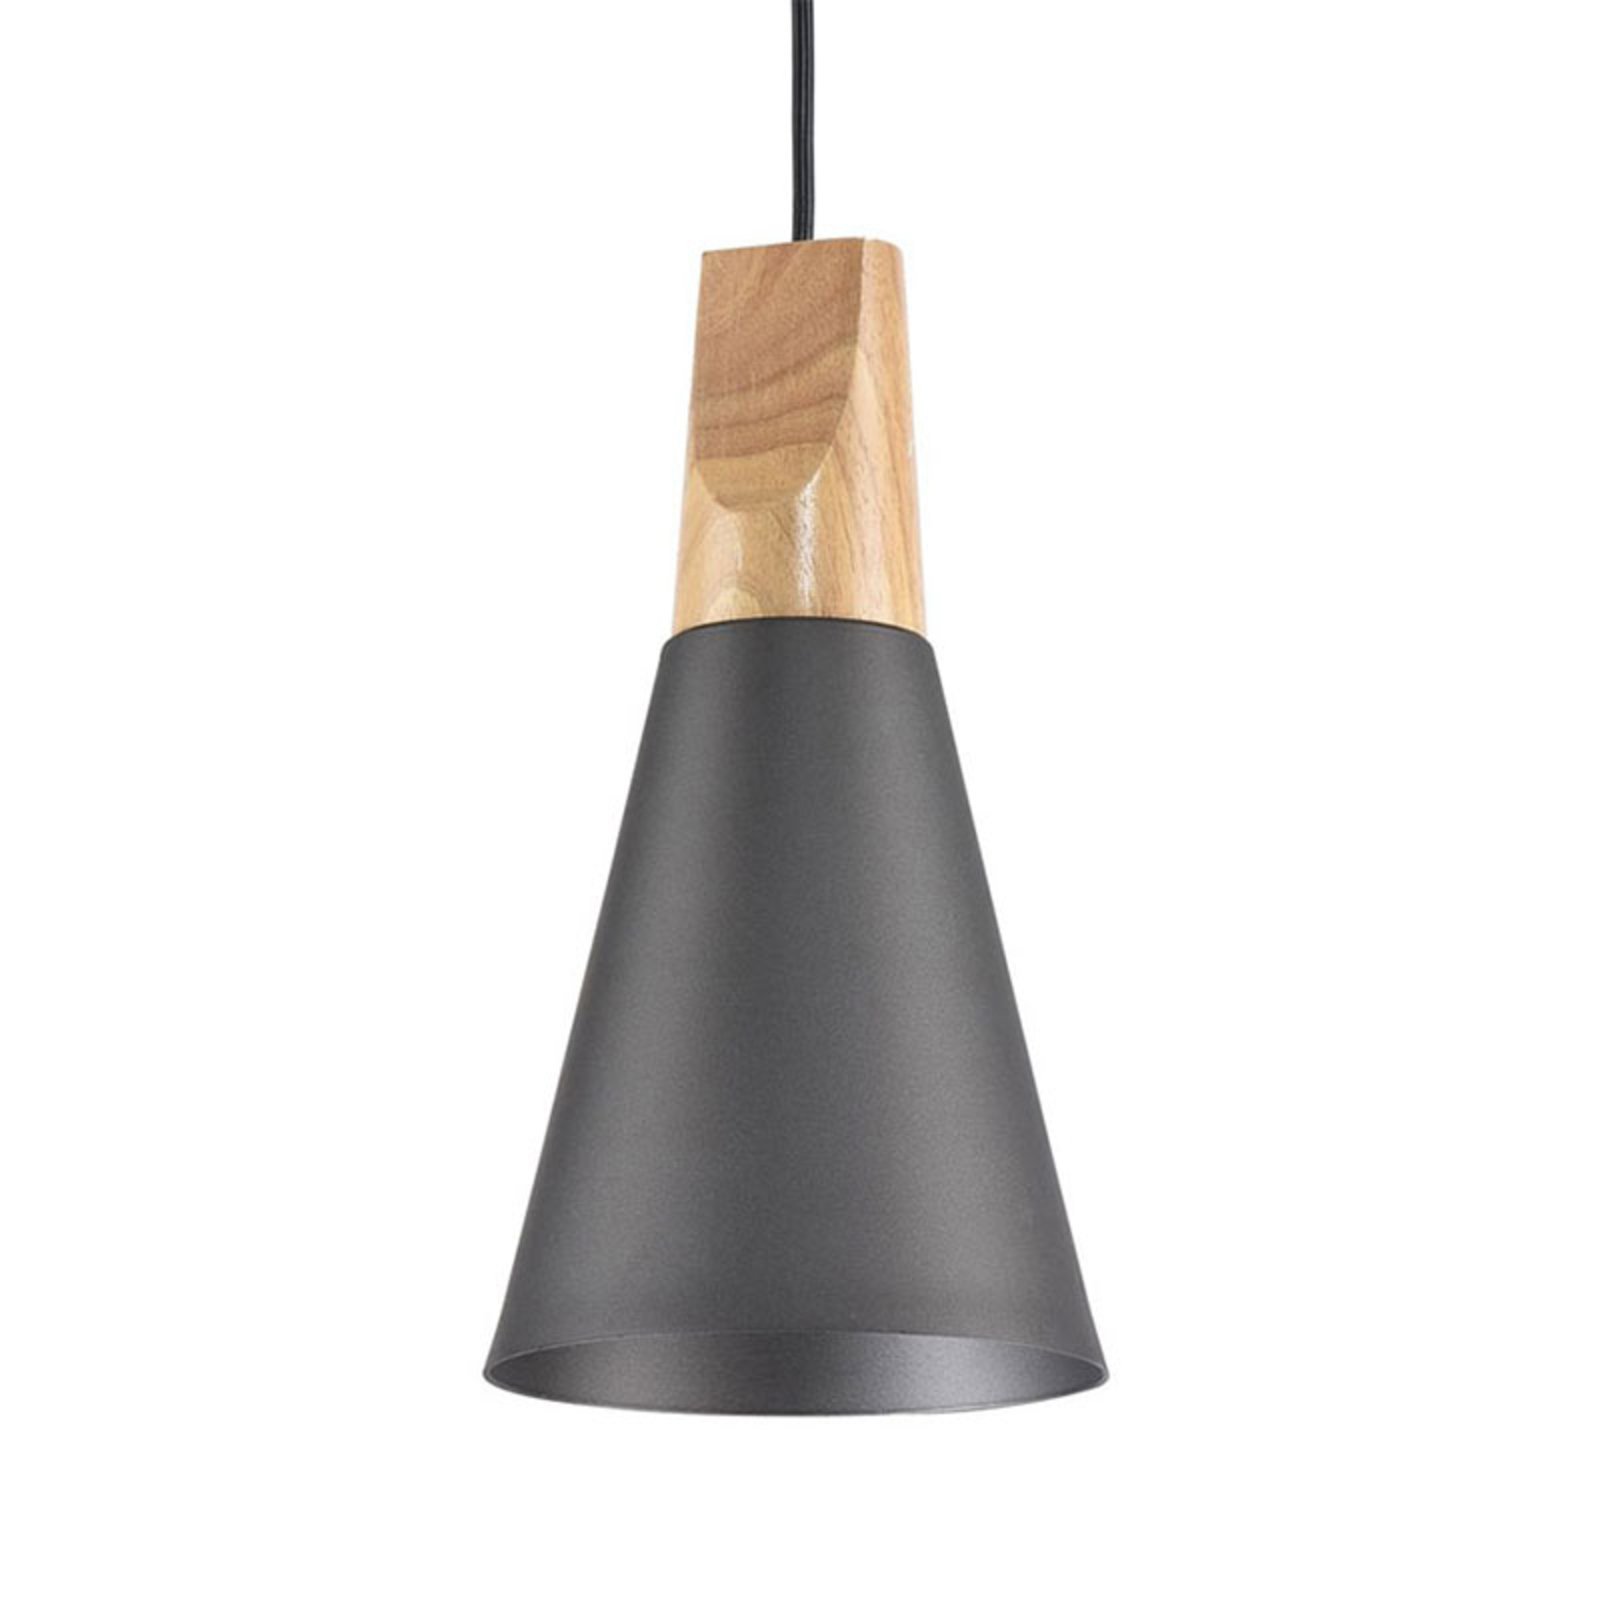 Dvokonusna viseća svjetiljka u antracit boji, Ø 14 cm